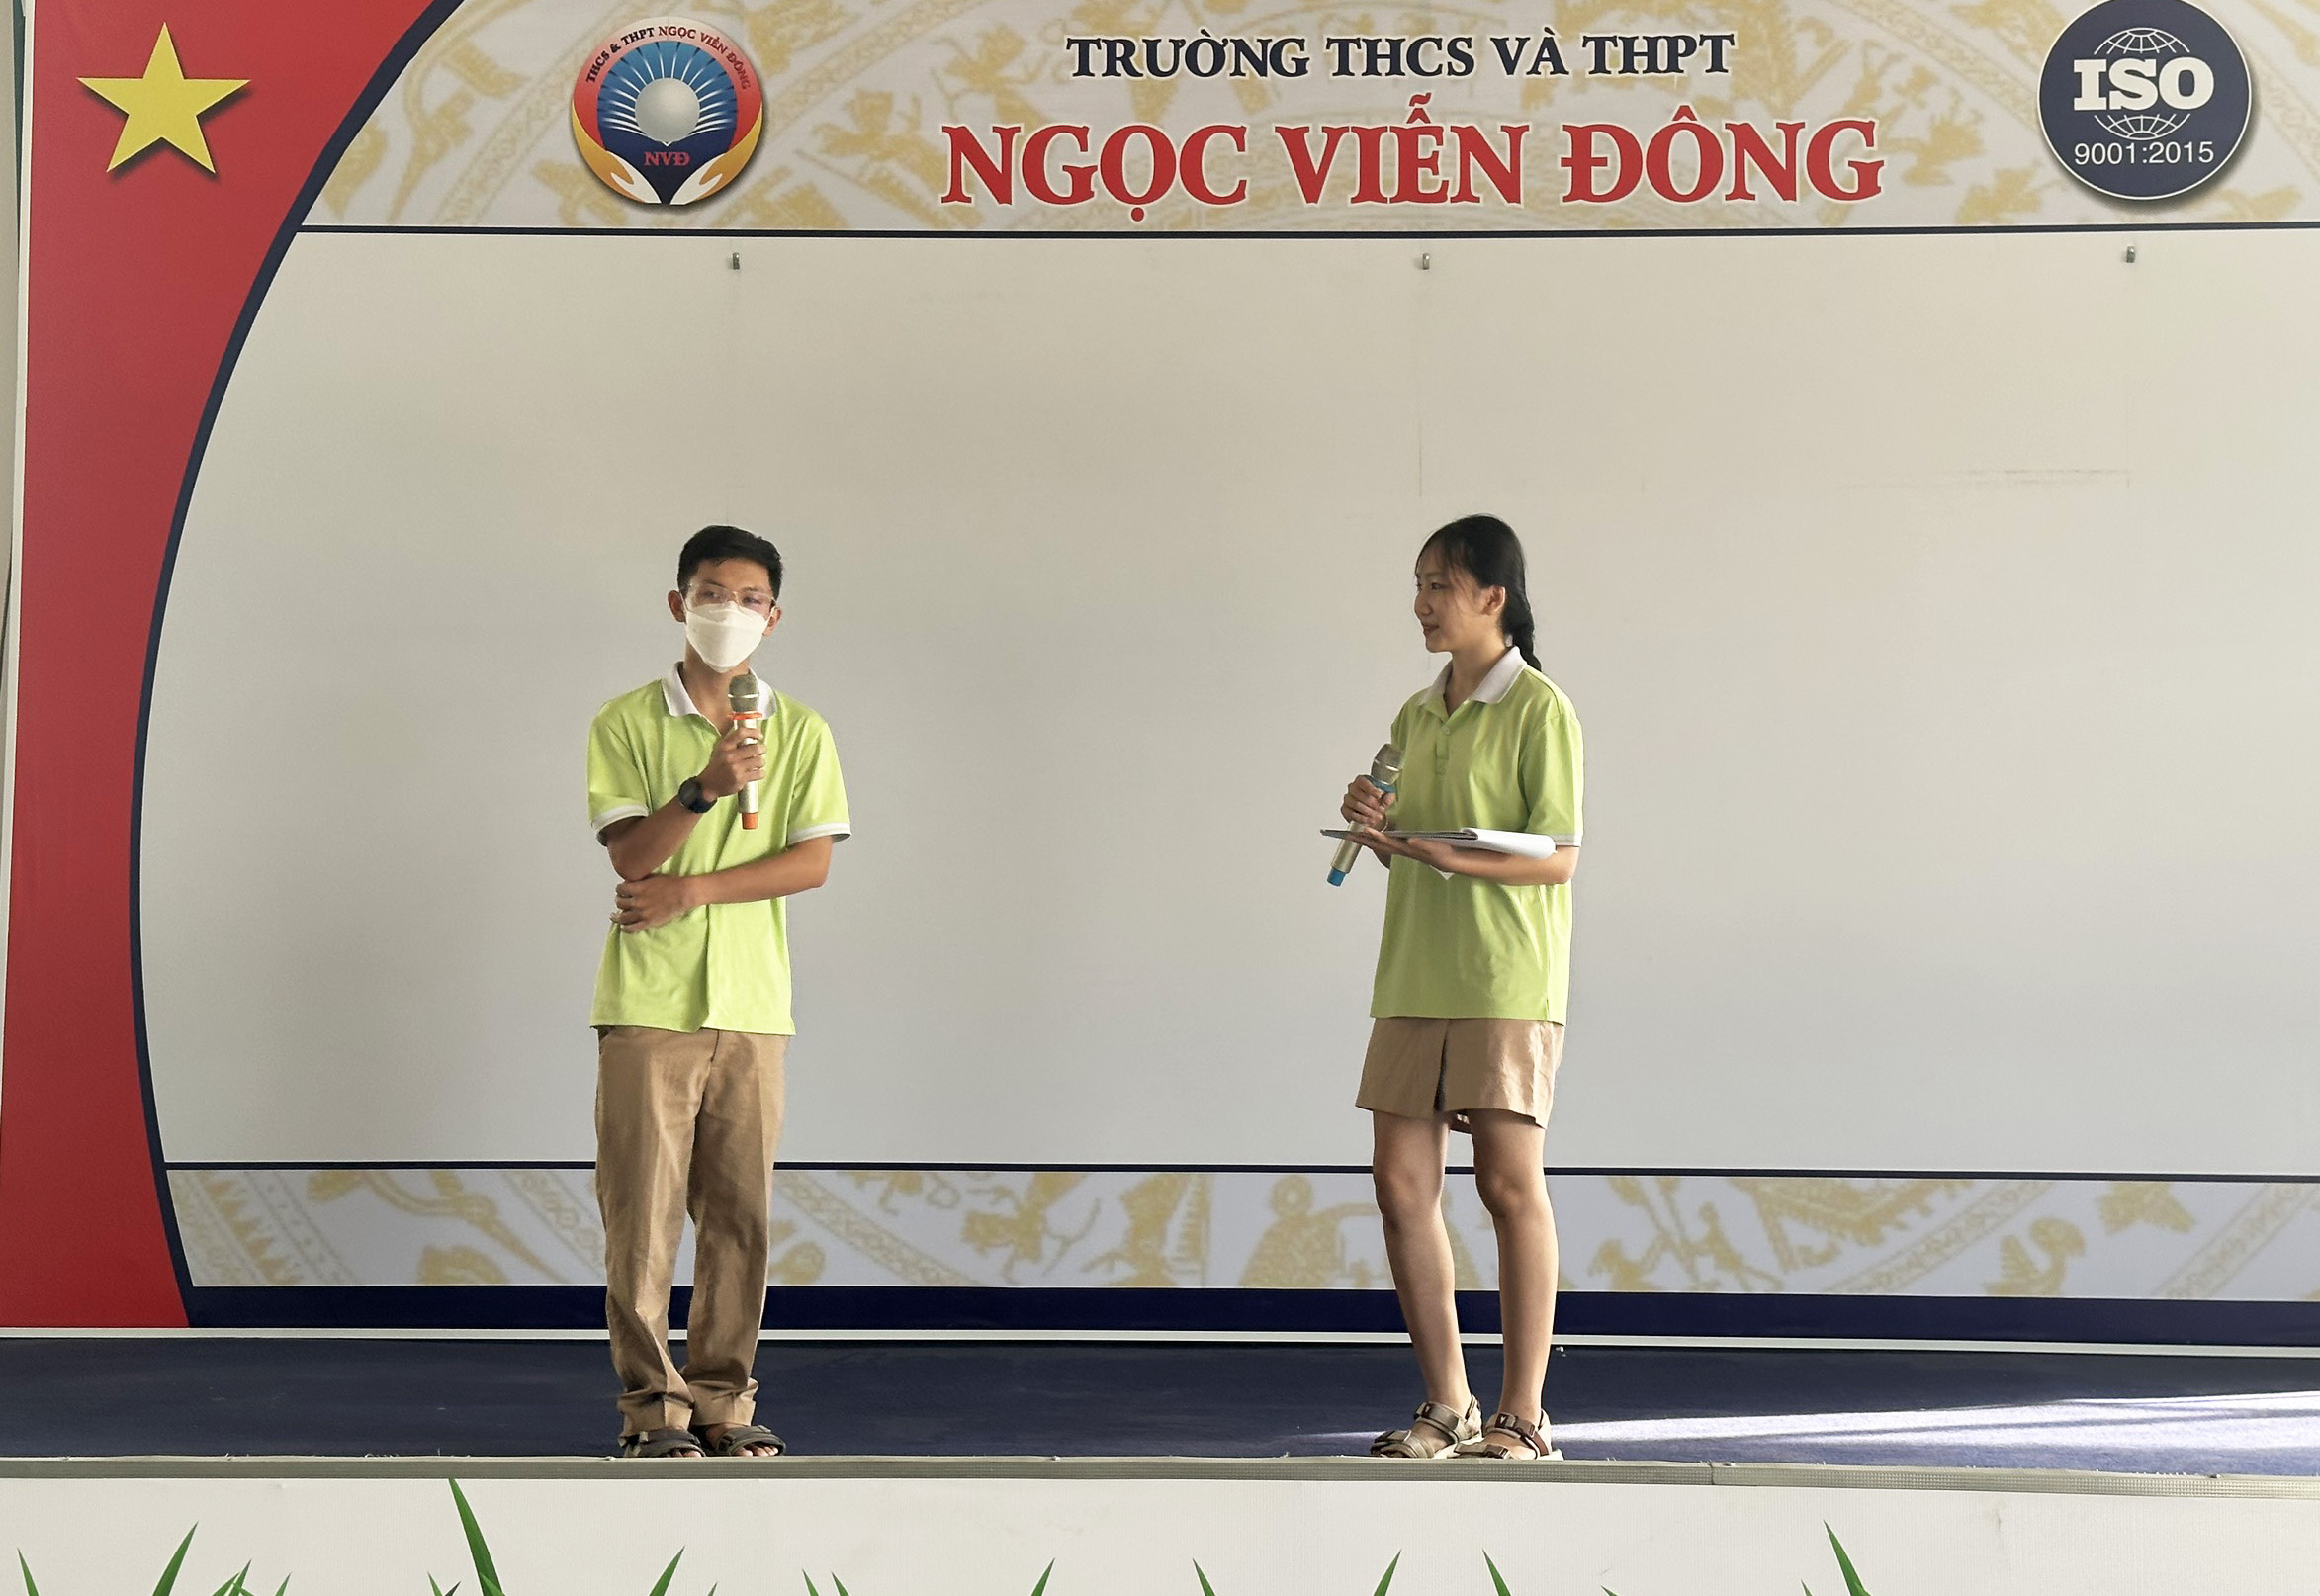 Học sinh Lê Vũ Minh Phúc giao lưu cùng các bạn trong buổi sinh hoạt dưới cờ